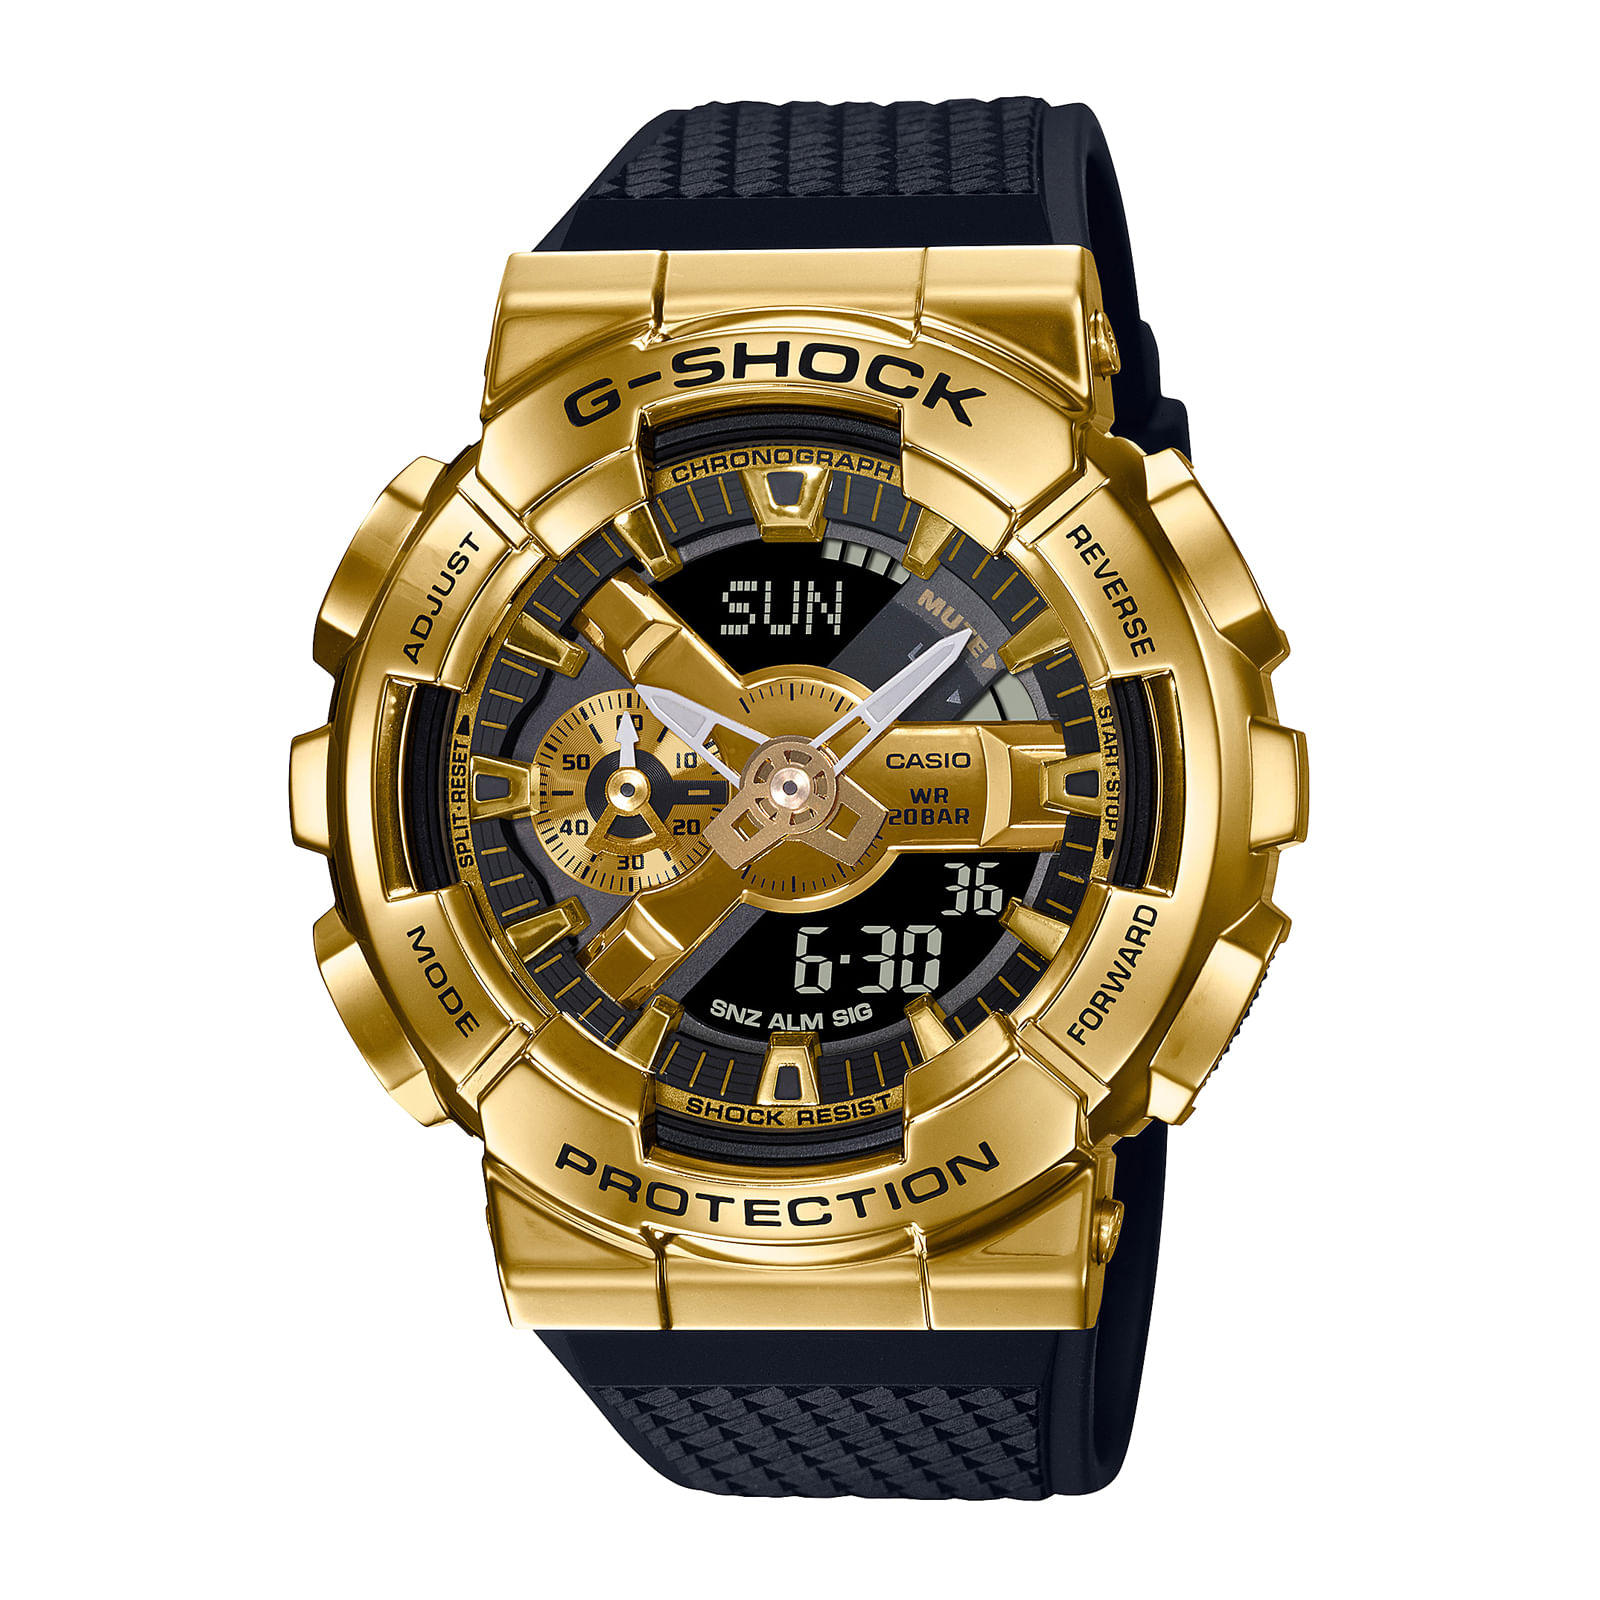 Reloj G-SHOCK GM-110G-1A9 Resina/Acero Hombre Dorado - Btime